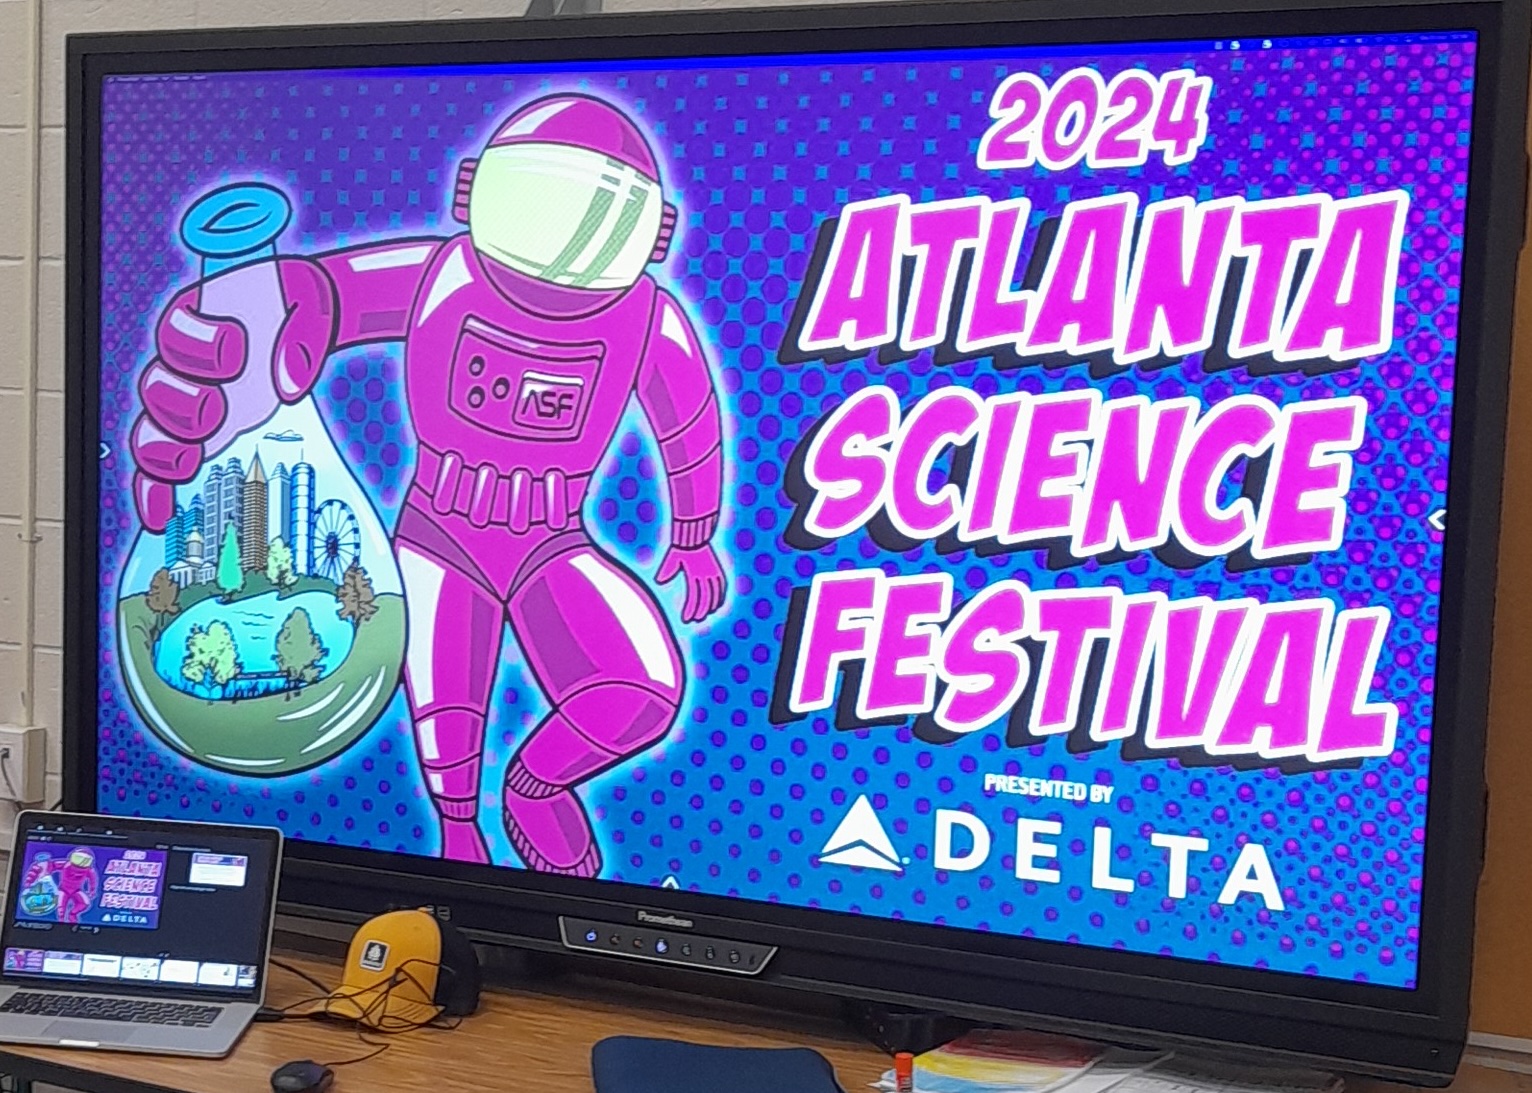 Atlanta Science Festival logo